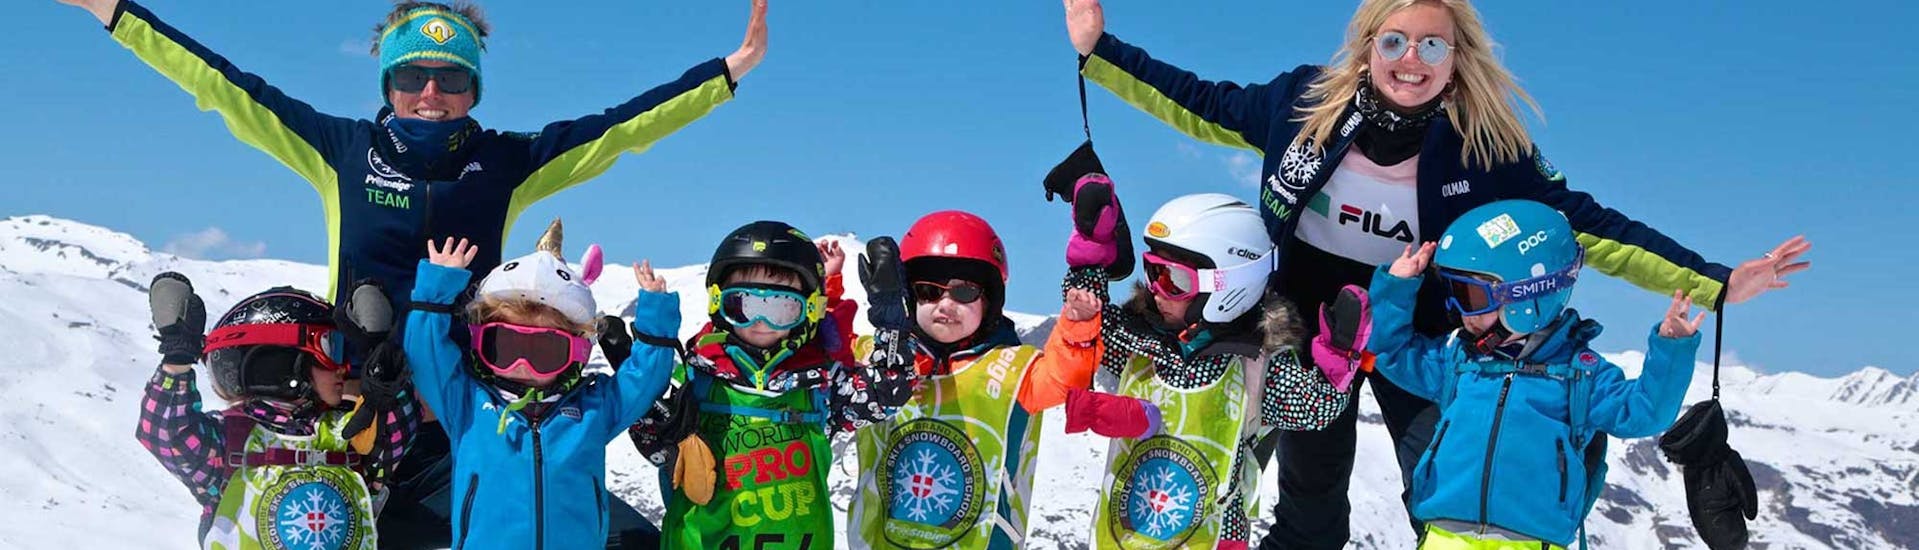 Clases de esquí para niños (5-13 años) - Máx. 7 por grupo.